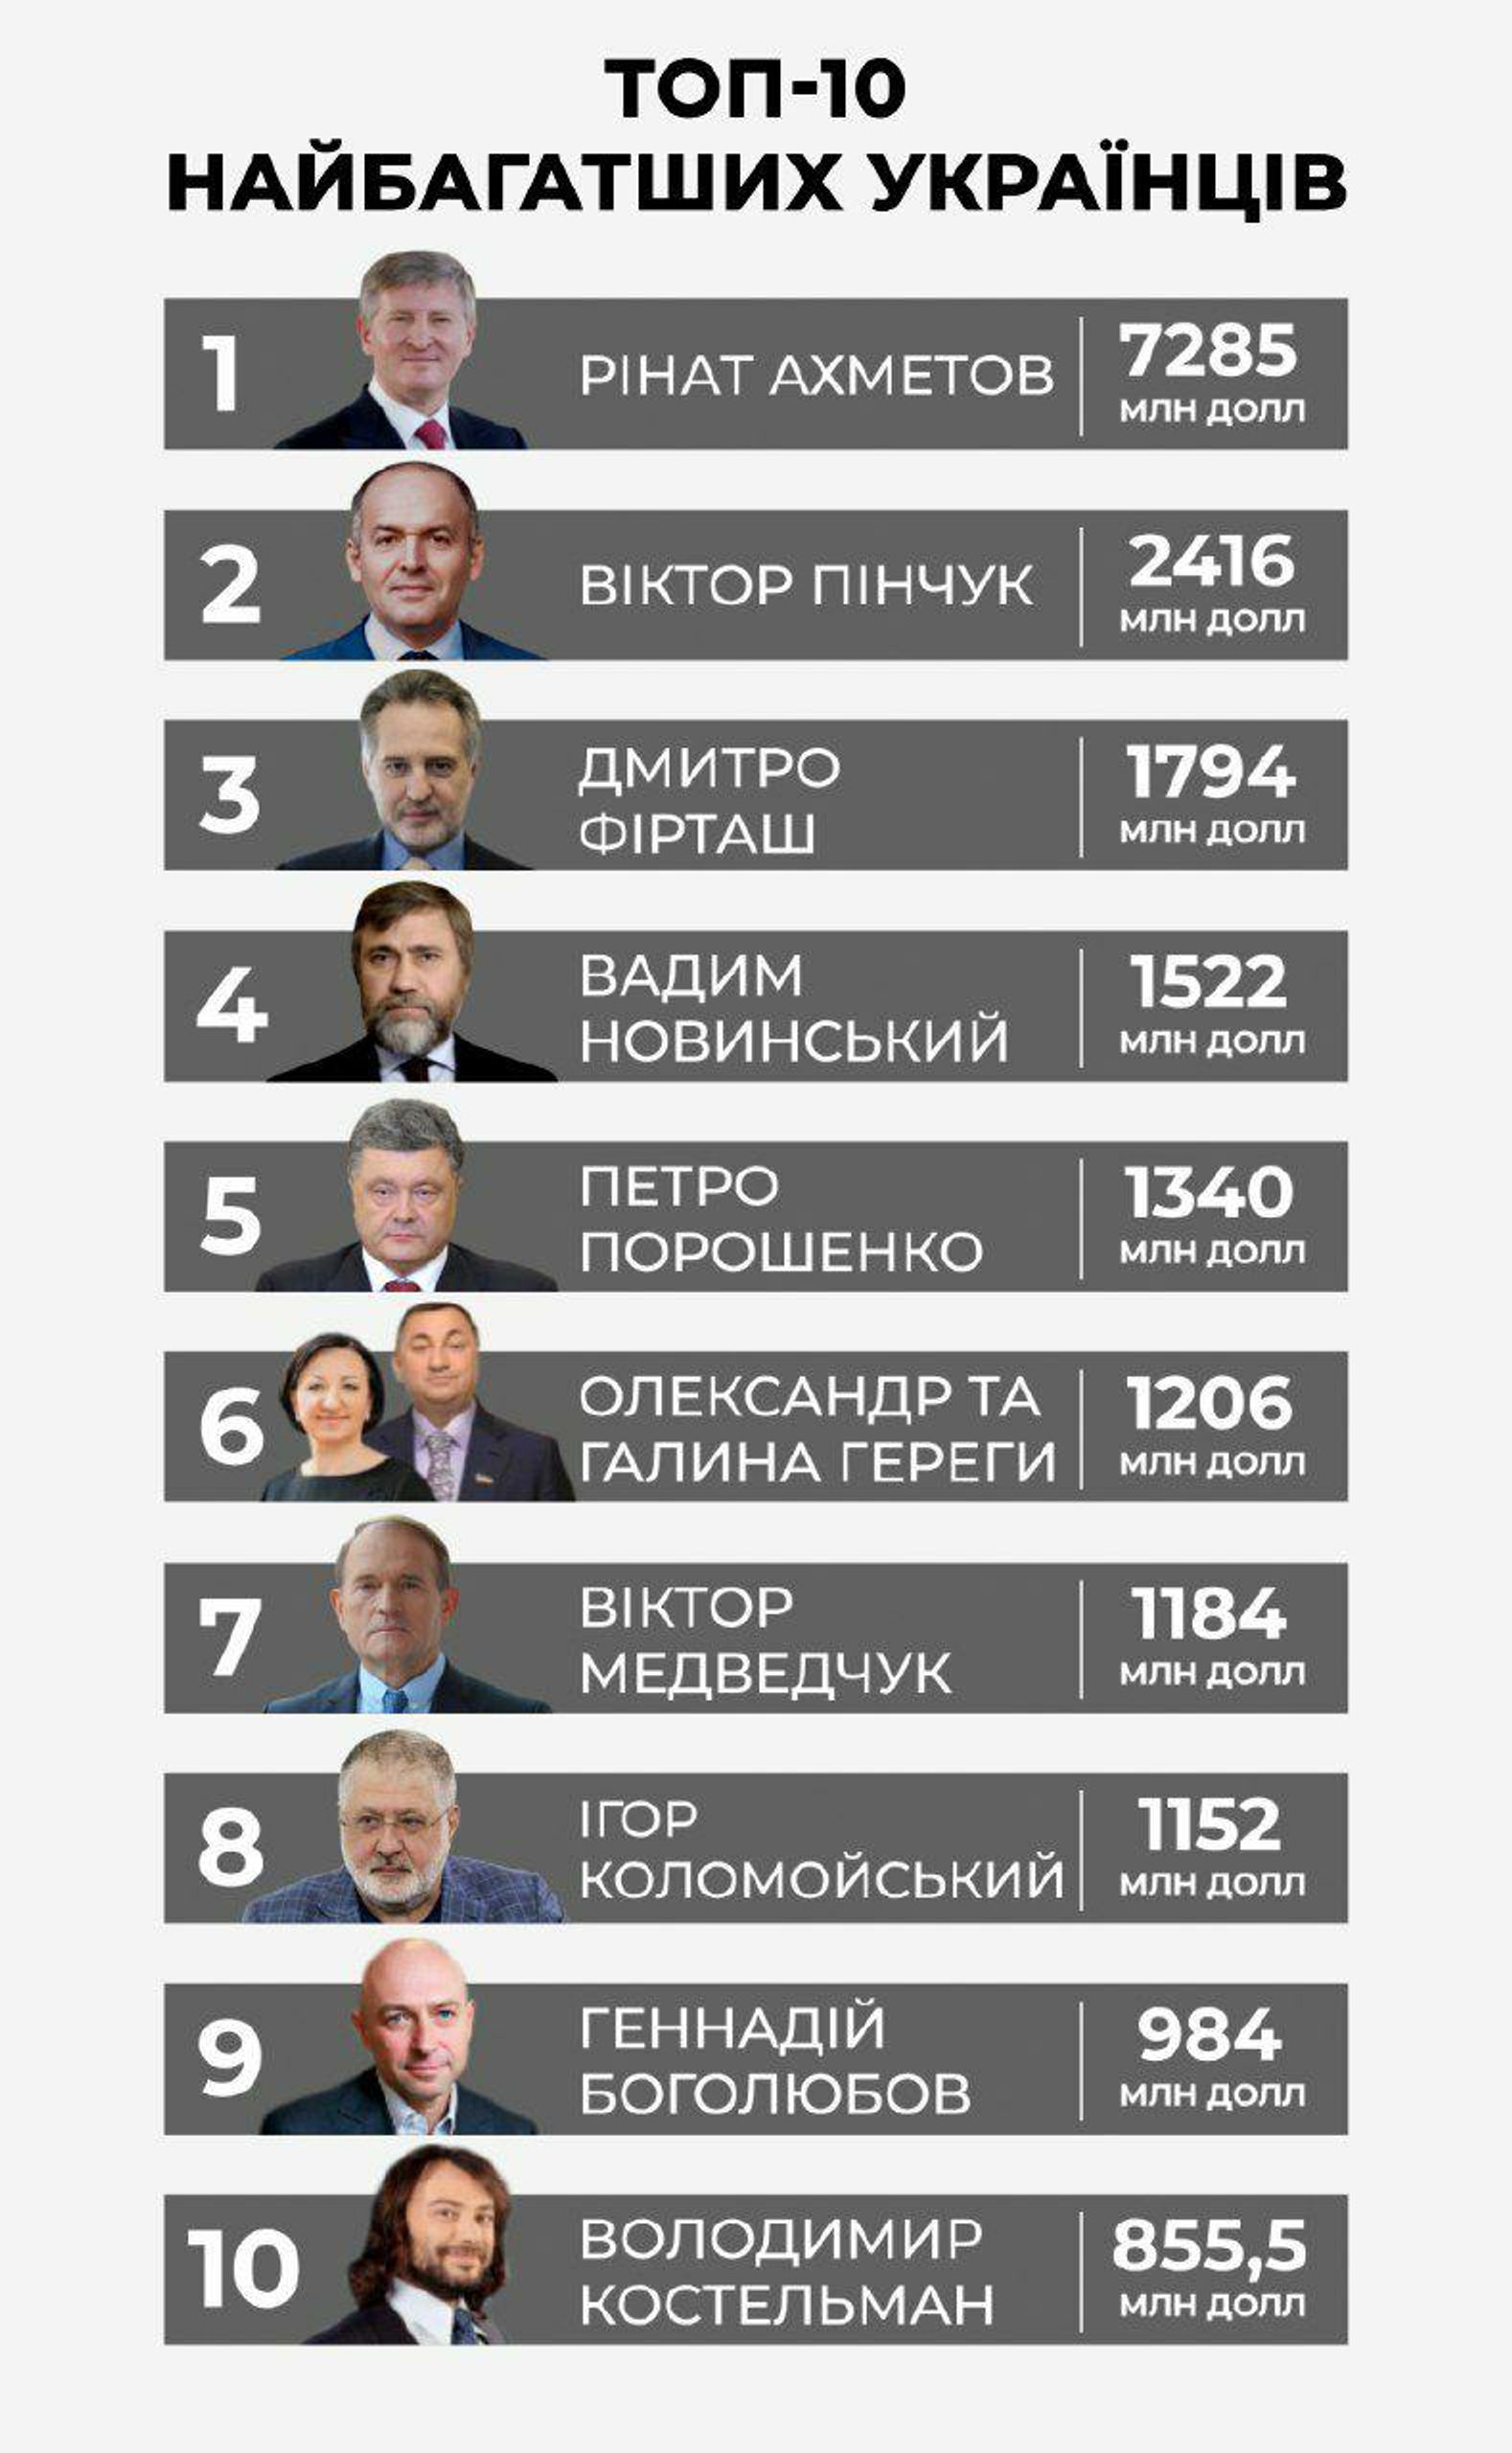 Рейтинг самых богатых людей Украины 2020 по версии журнала "Фокус"